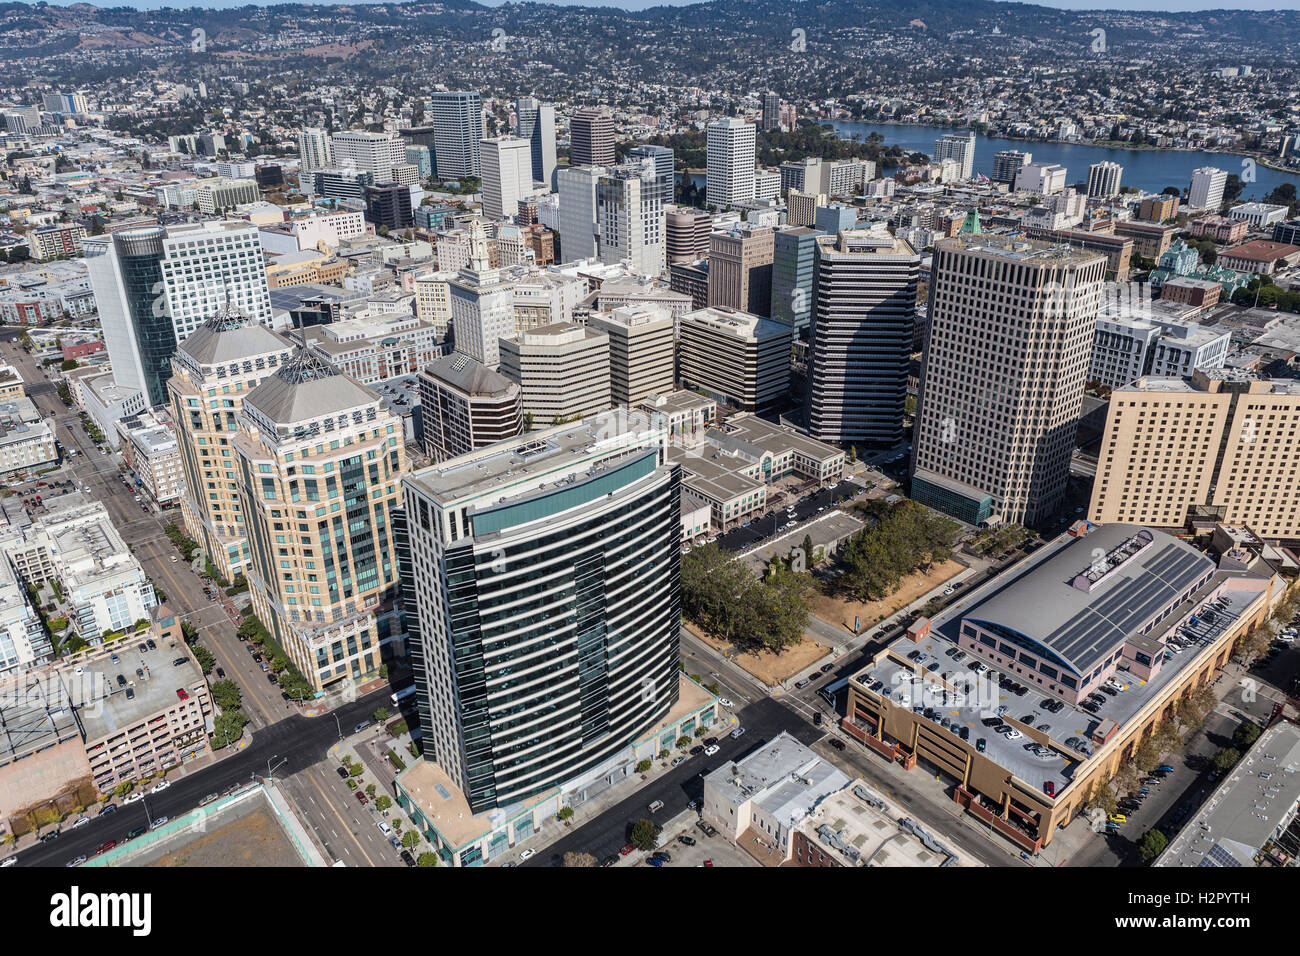 Vista aérea de la ciudad de Oakland, California. Foto de stock